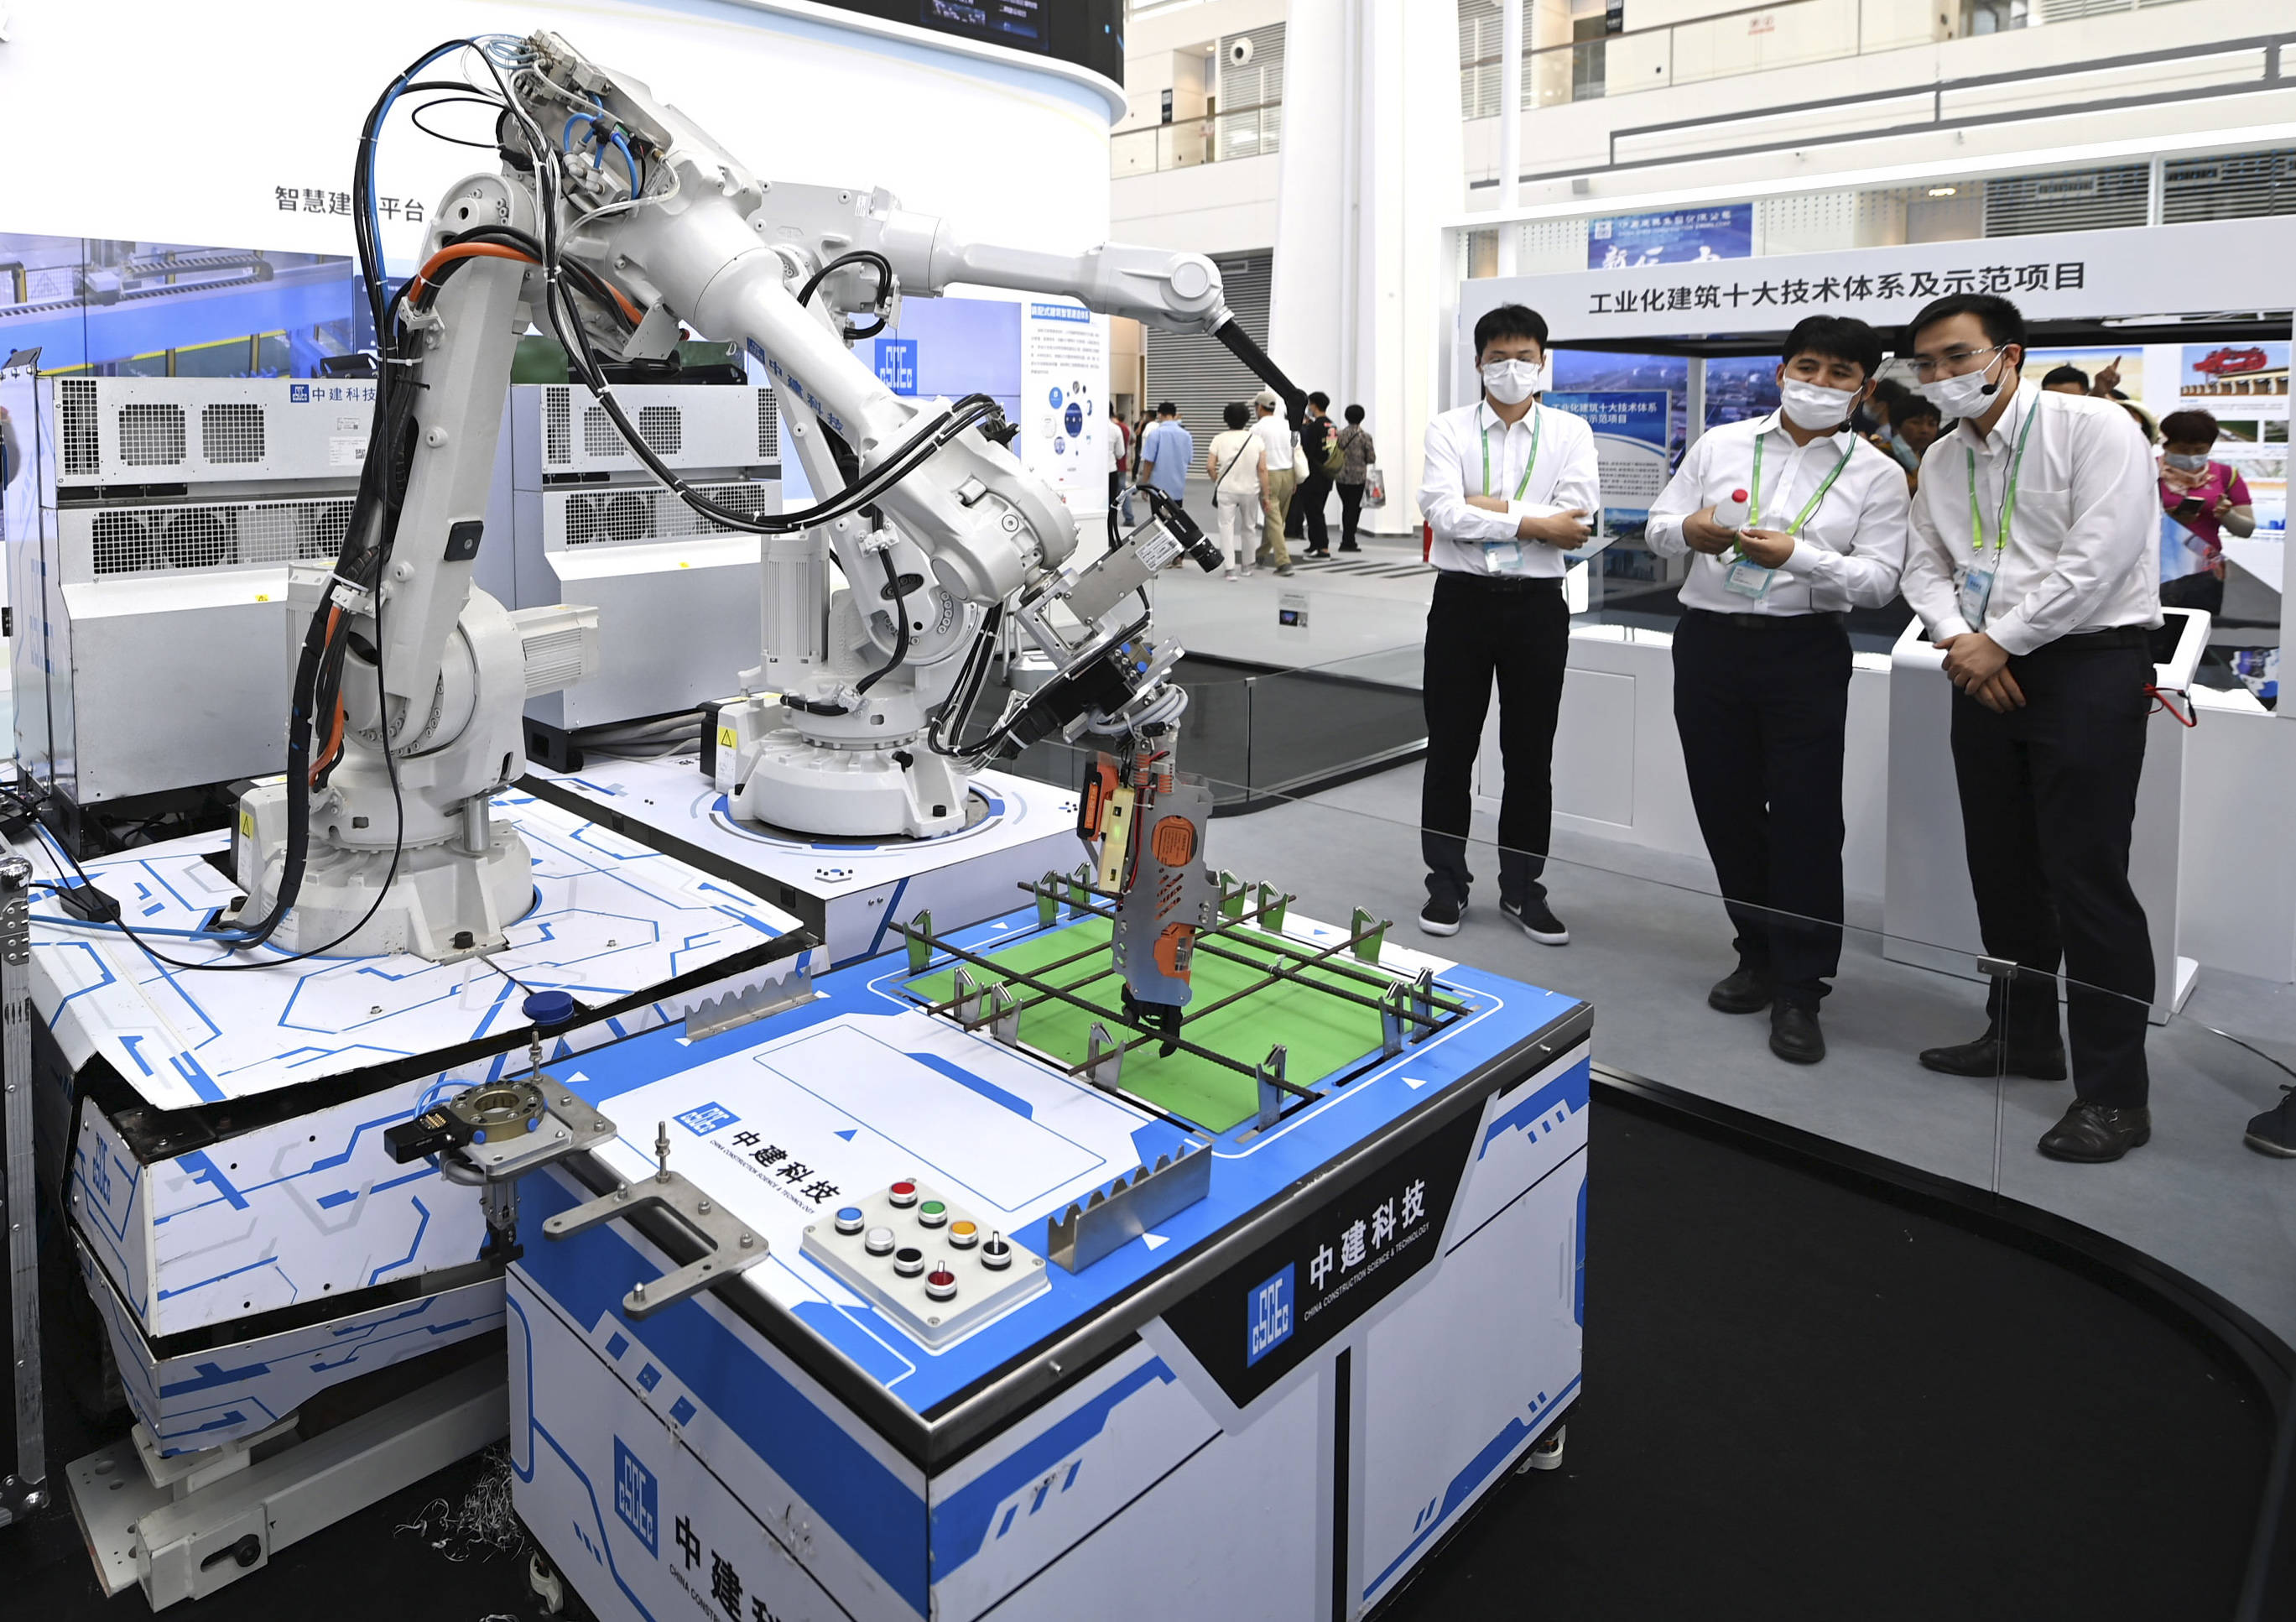 6月24日,观众在国家会展中心(天津)一期展馆内参观中建科技的一款机器